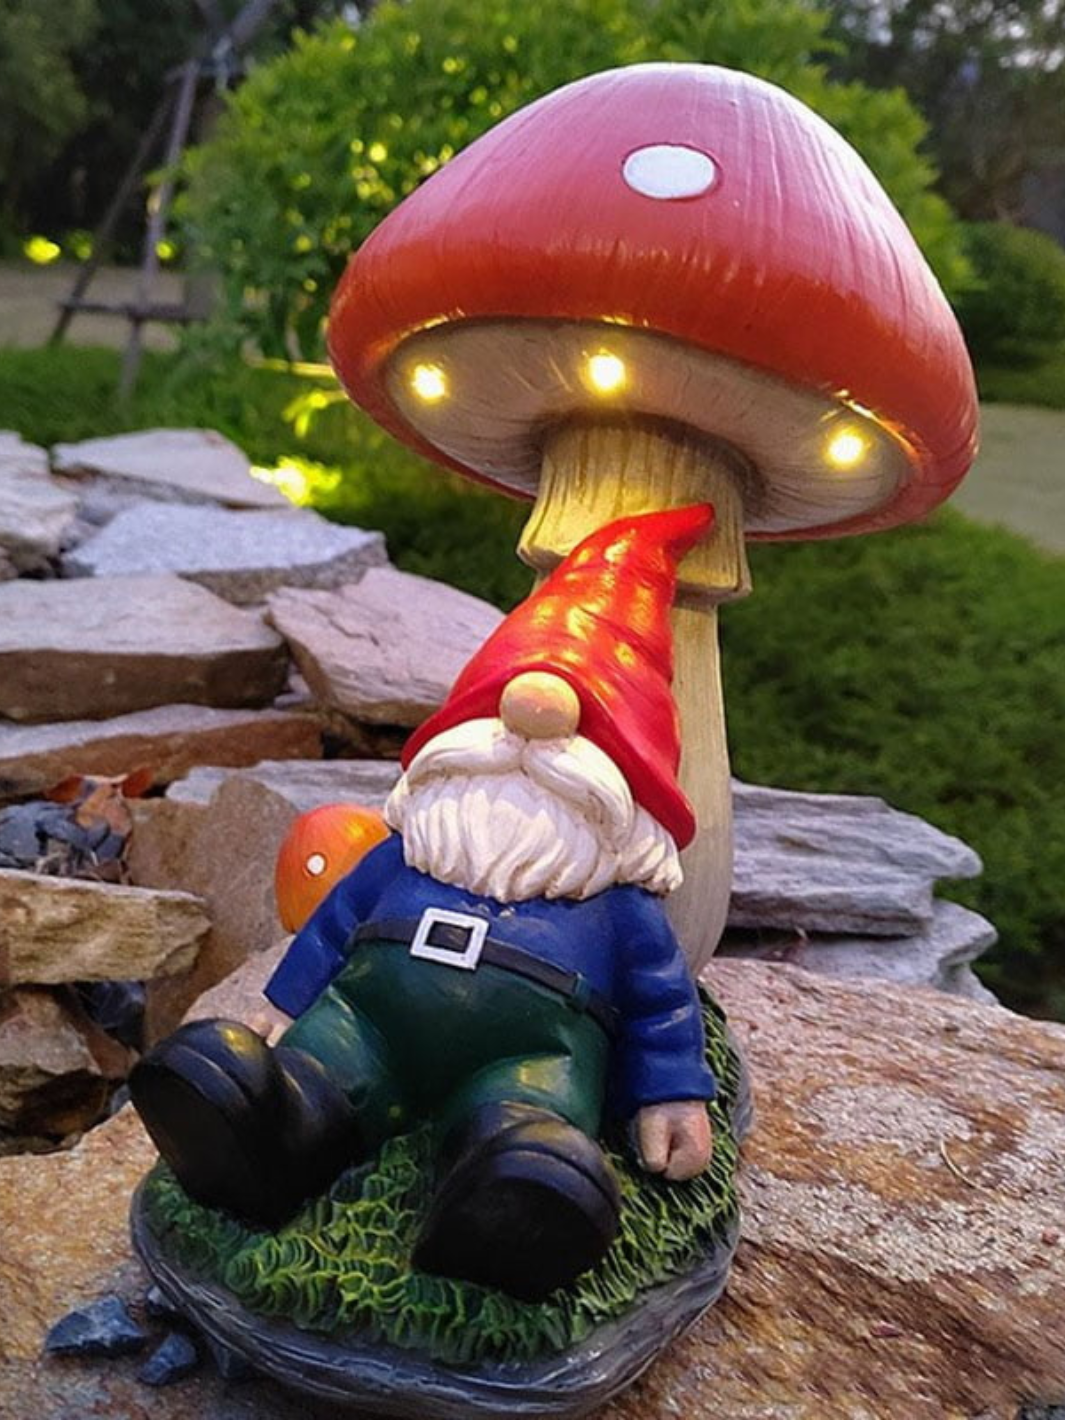 Statue de jardin en béton - nain endormi sur champignon